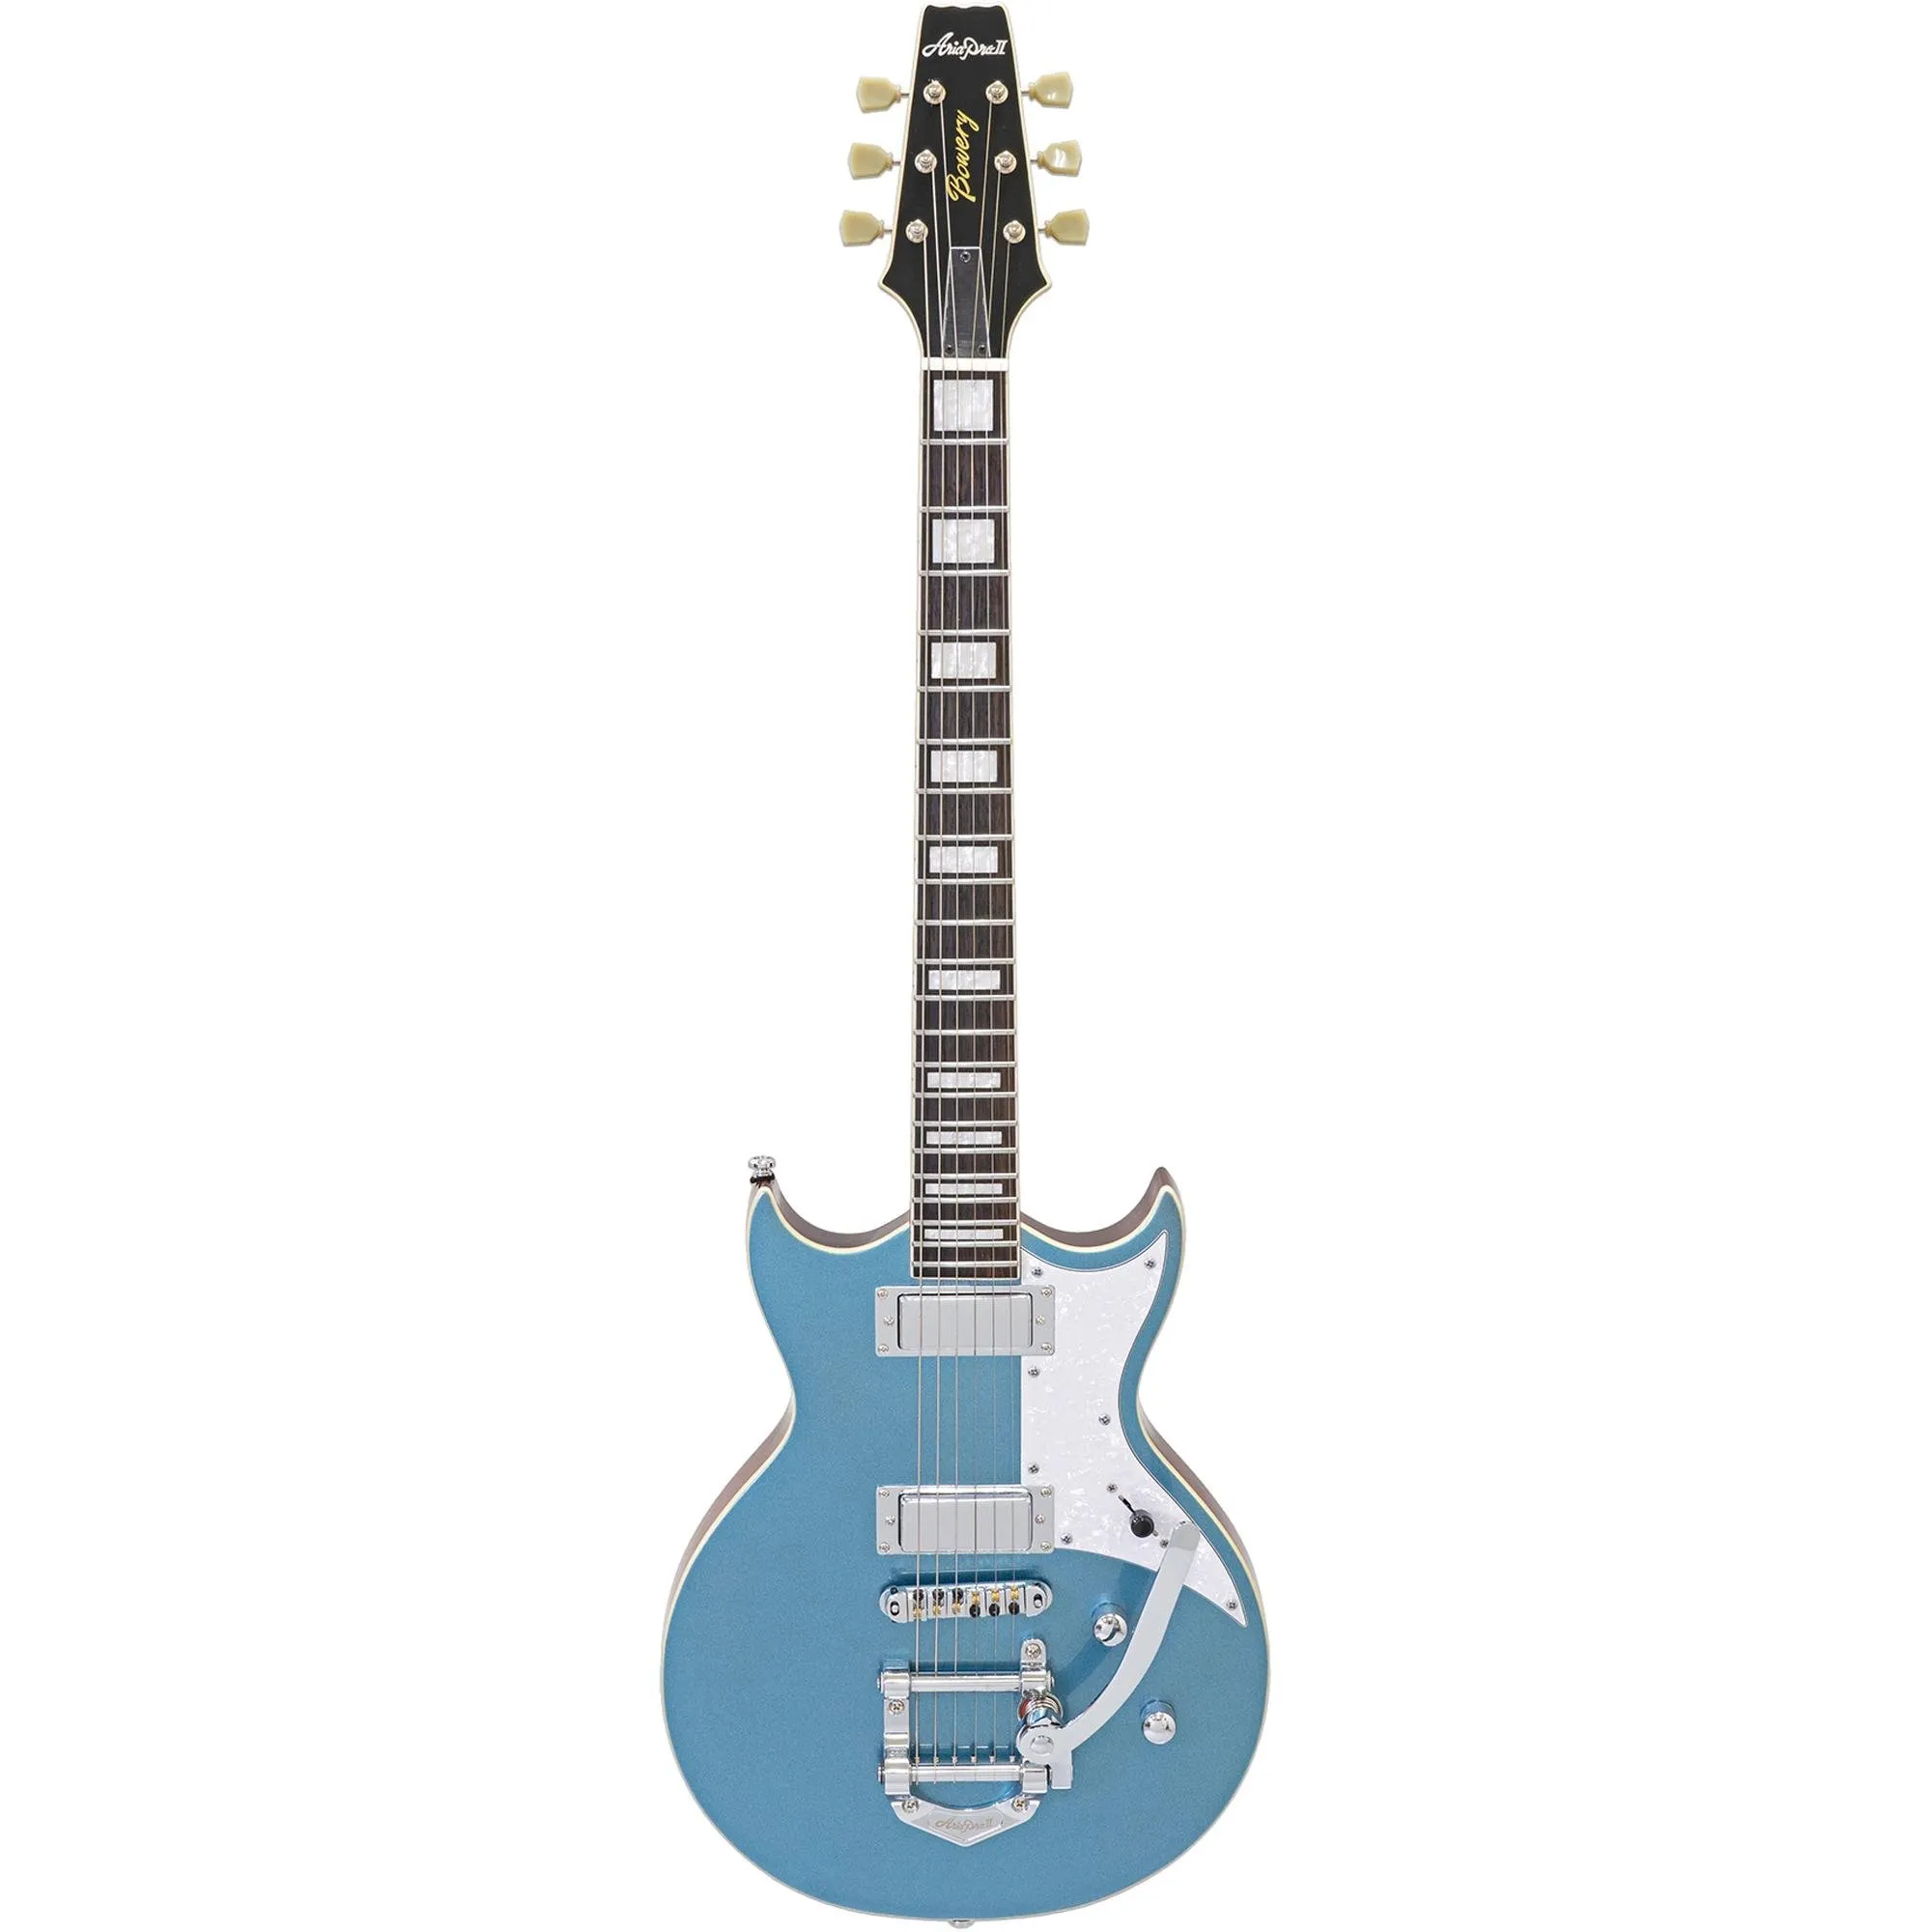 Guitarra Aria Pro II 212-MK2 Bowery Phantom Blue por 5.054,00 à vista no boleto/pix ou parcele em até 12x sem juros. Compre na loja Mundomax!